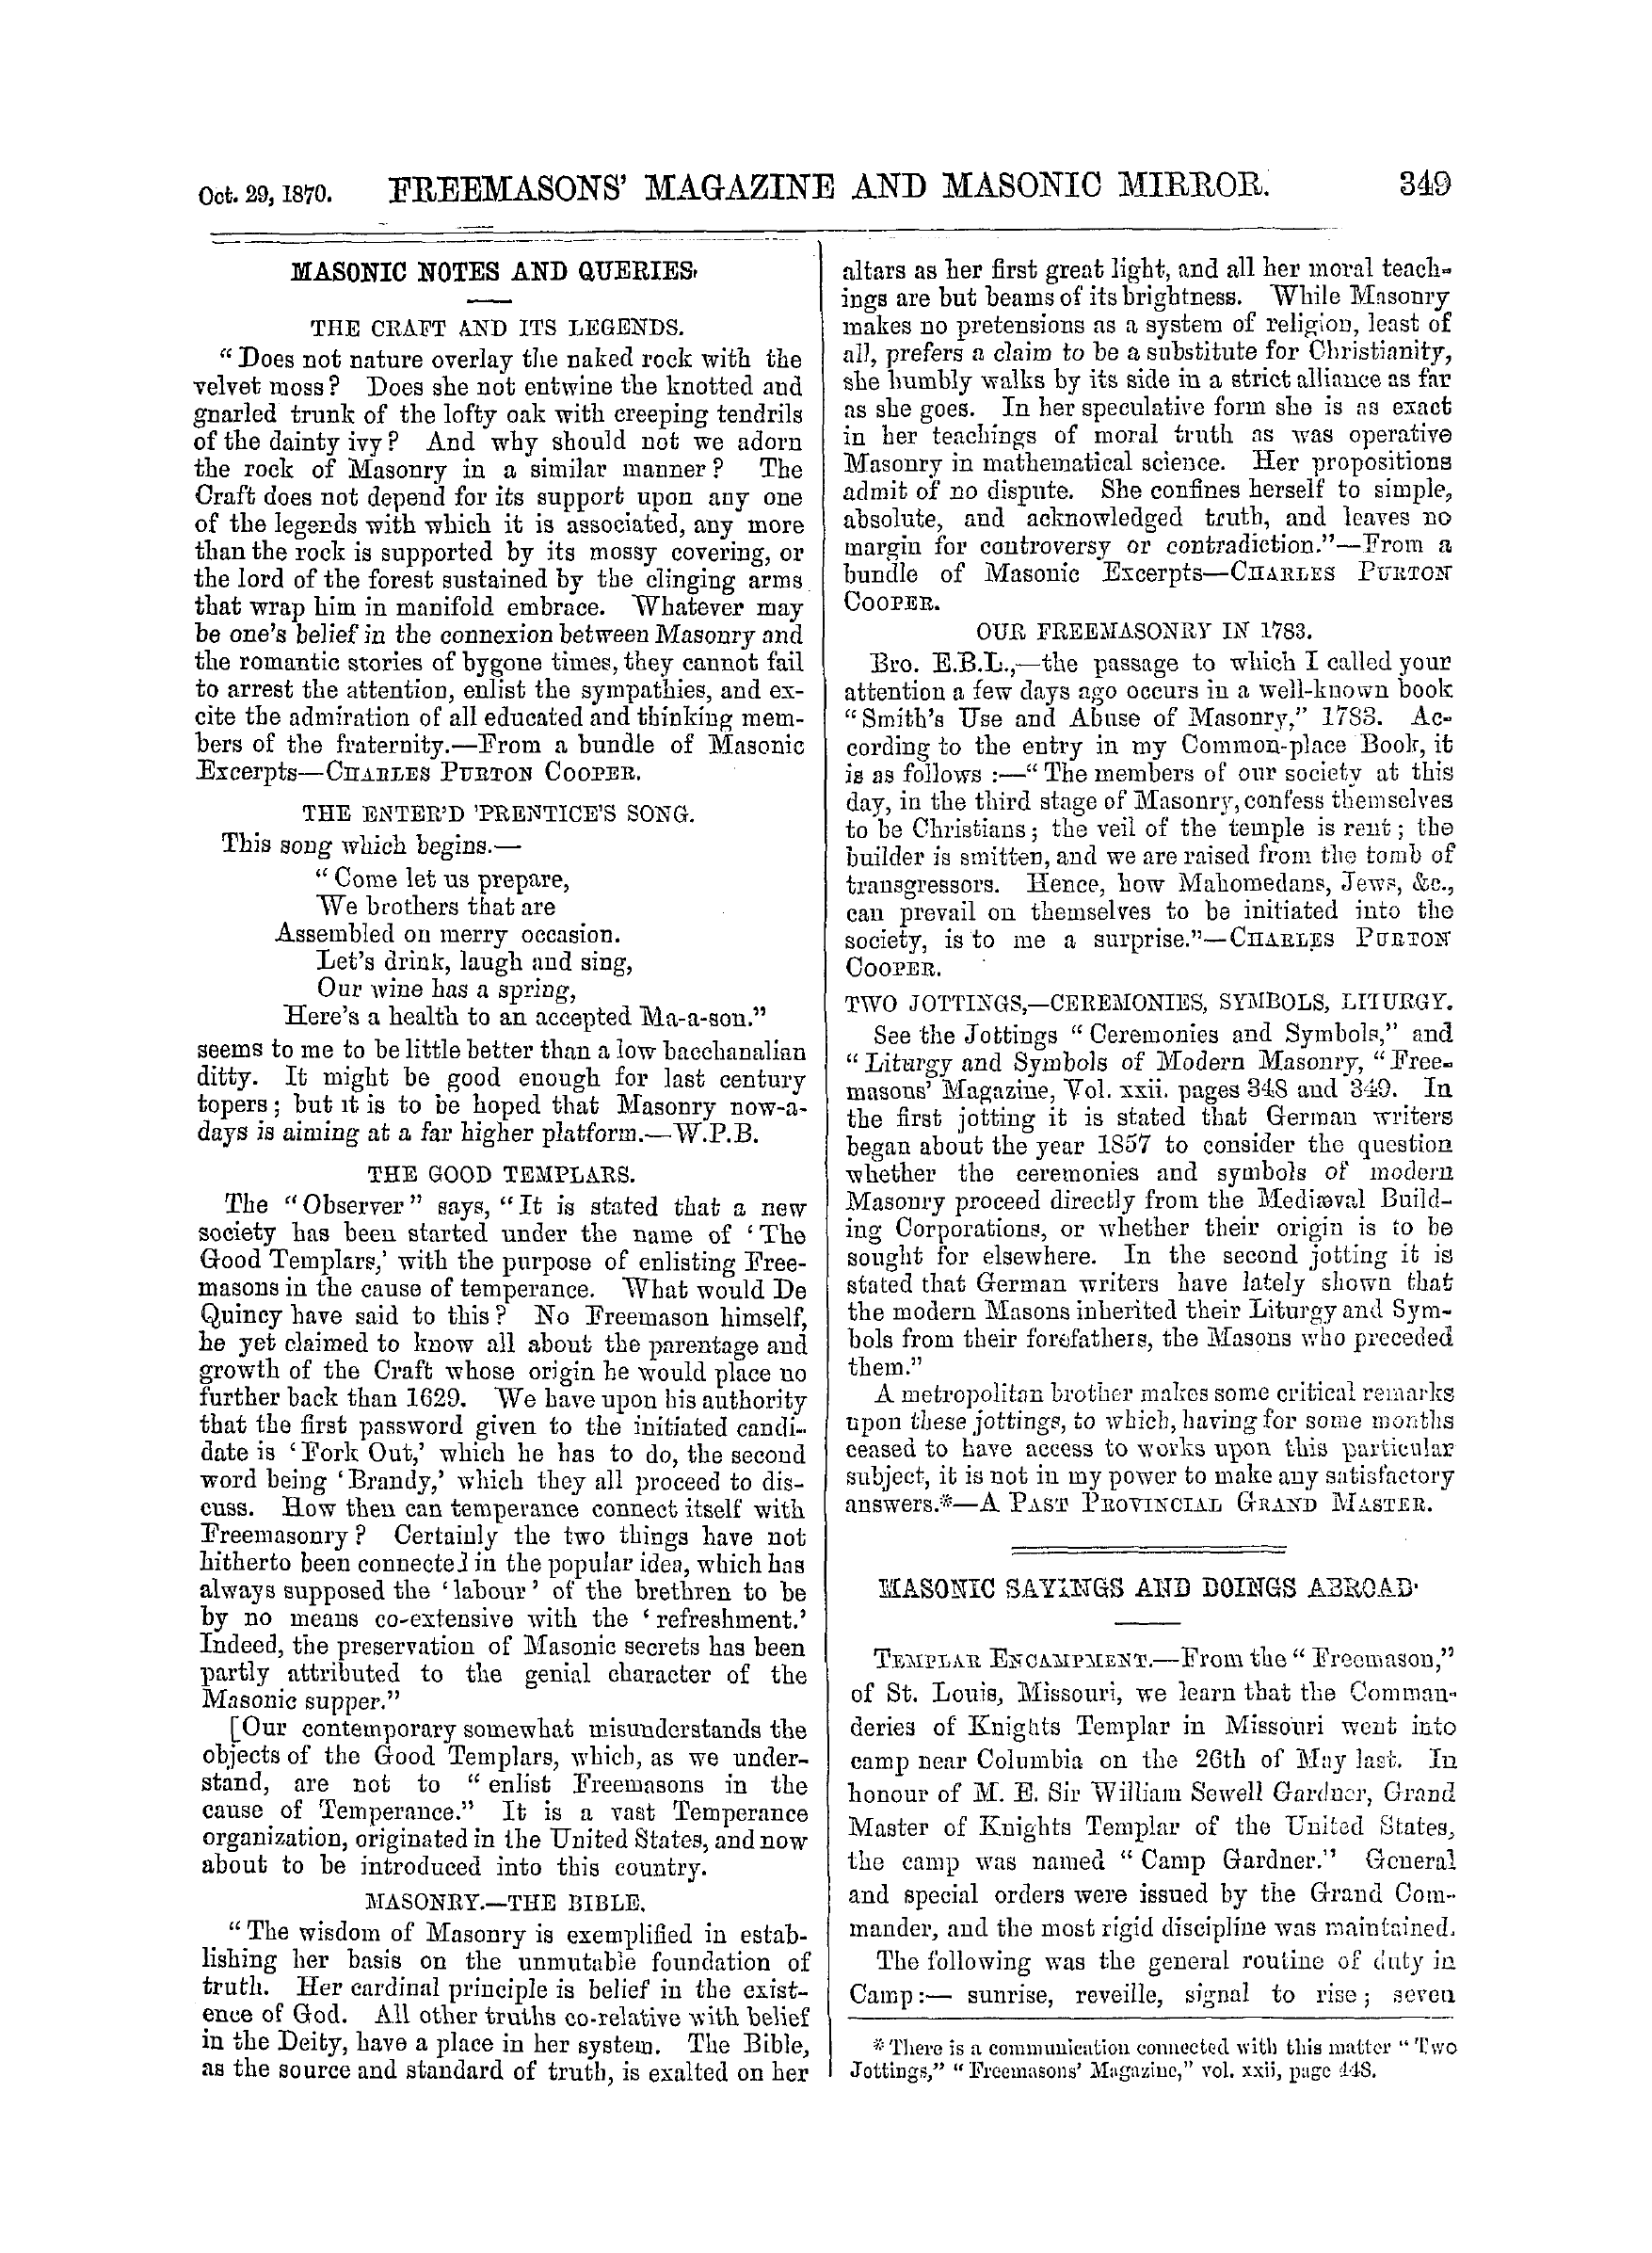 The Freemasons' Monthly Magazine: 1870-10-29: 9